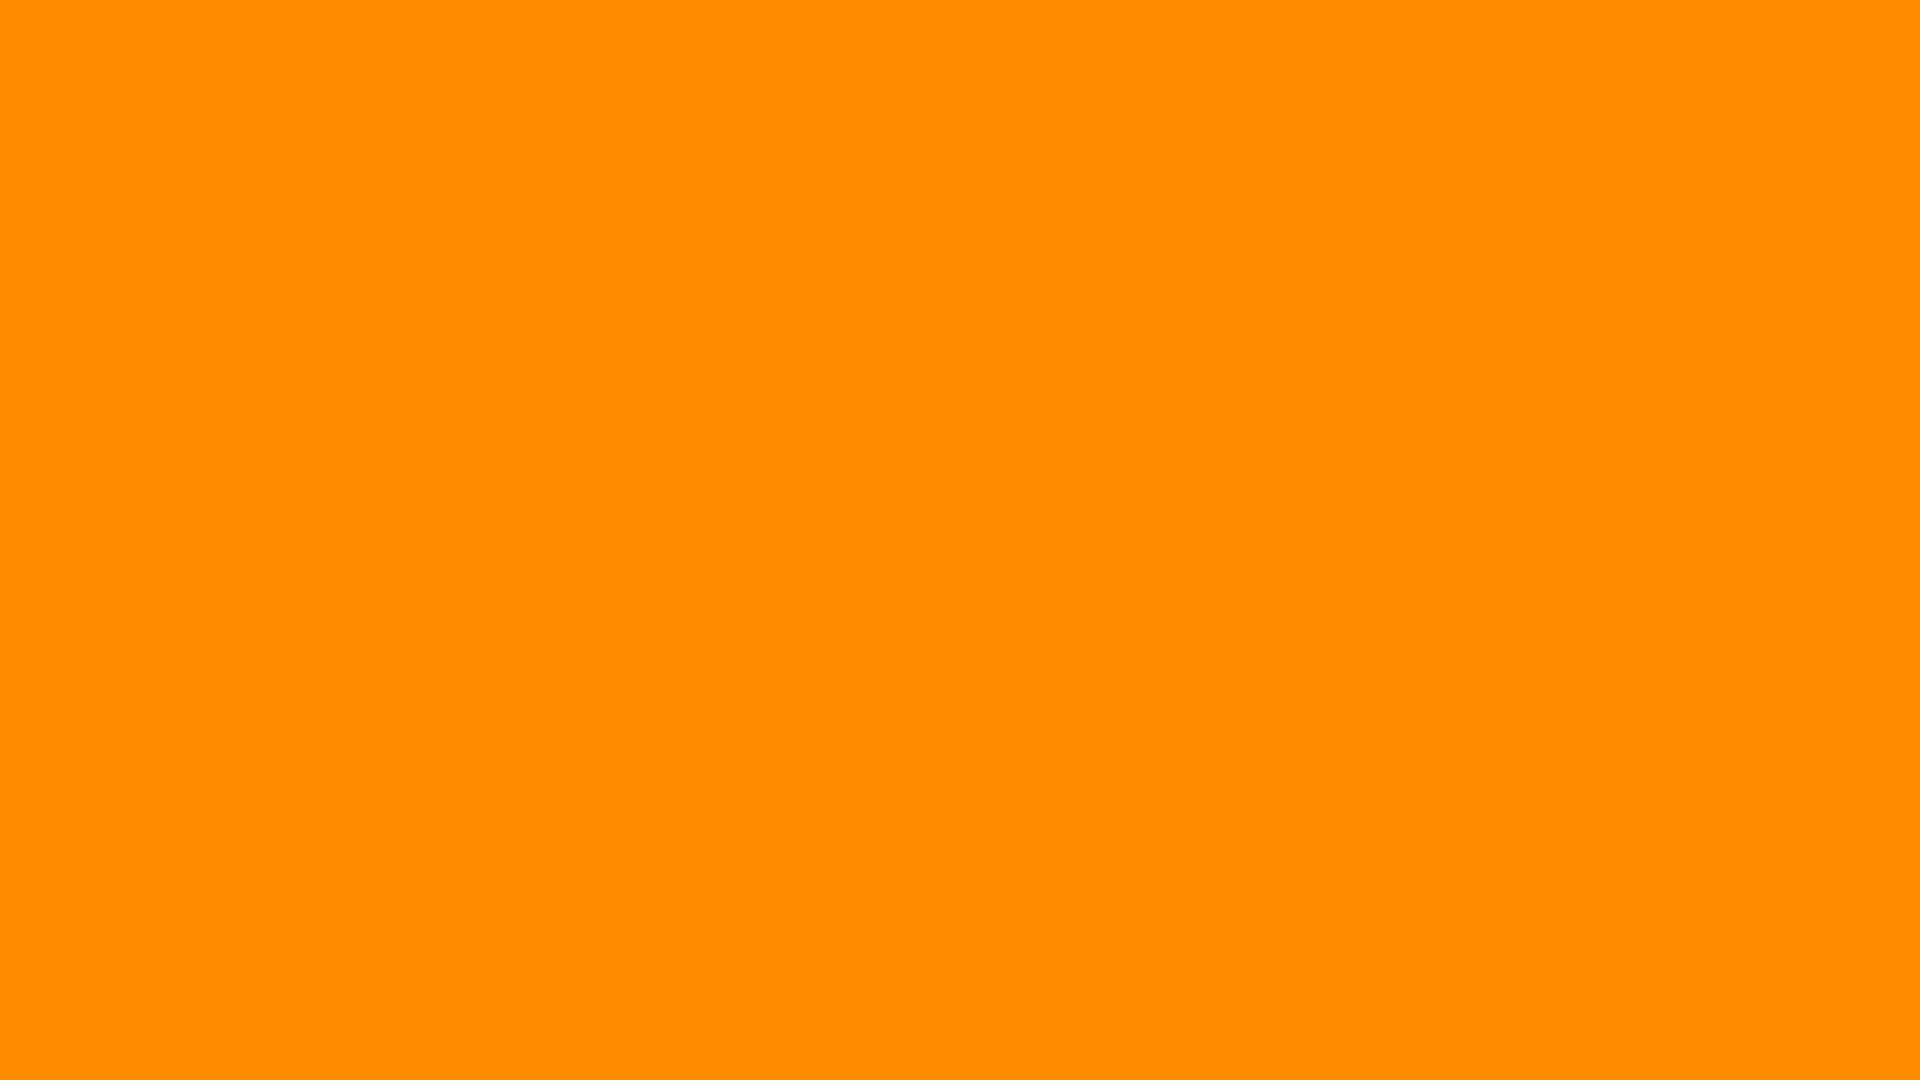 Nền Màu Cam Đậm 1920x1080: Màu cam đậm đã được sử dụng để tạo nên một hình nền tuyệt đẹp, phù hợp với màn hình có độ phân giải 1920x